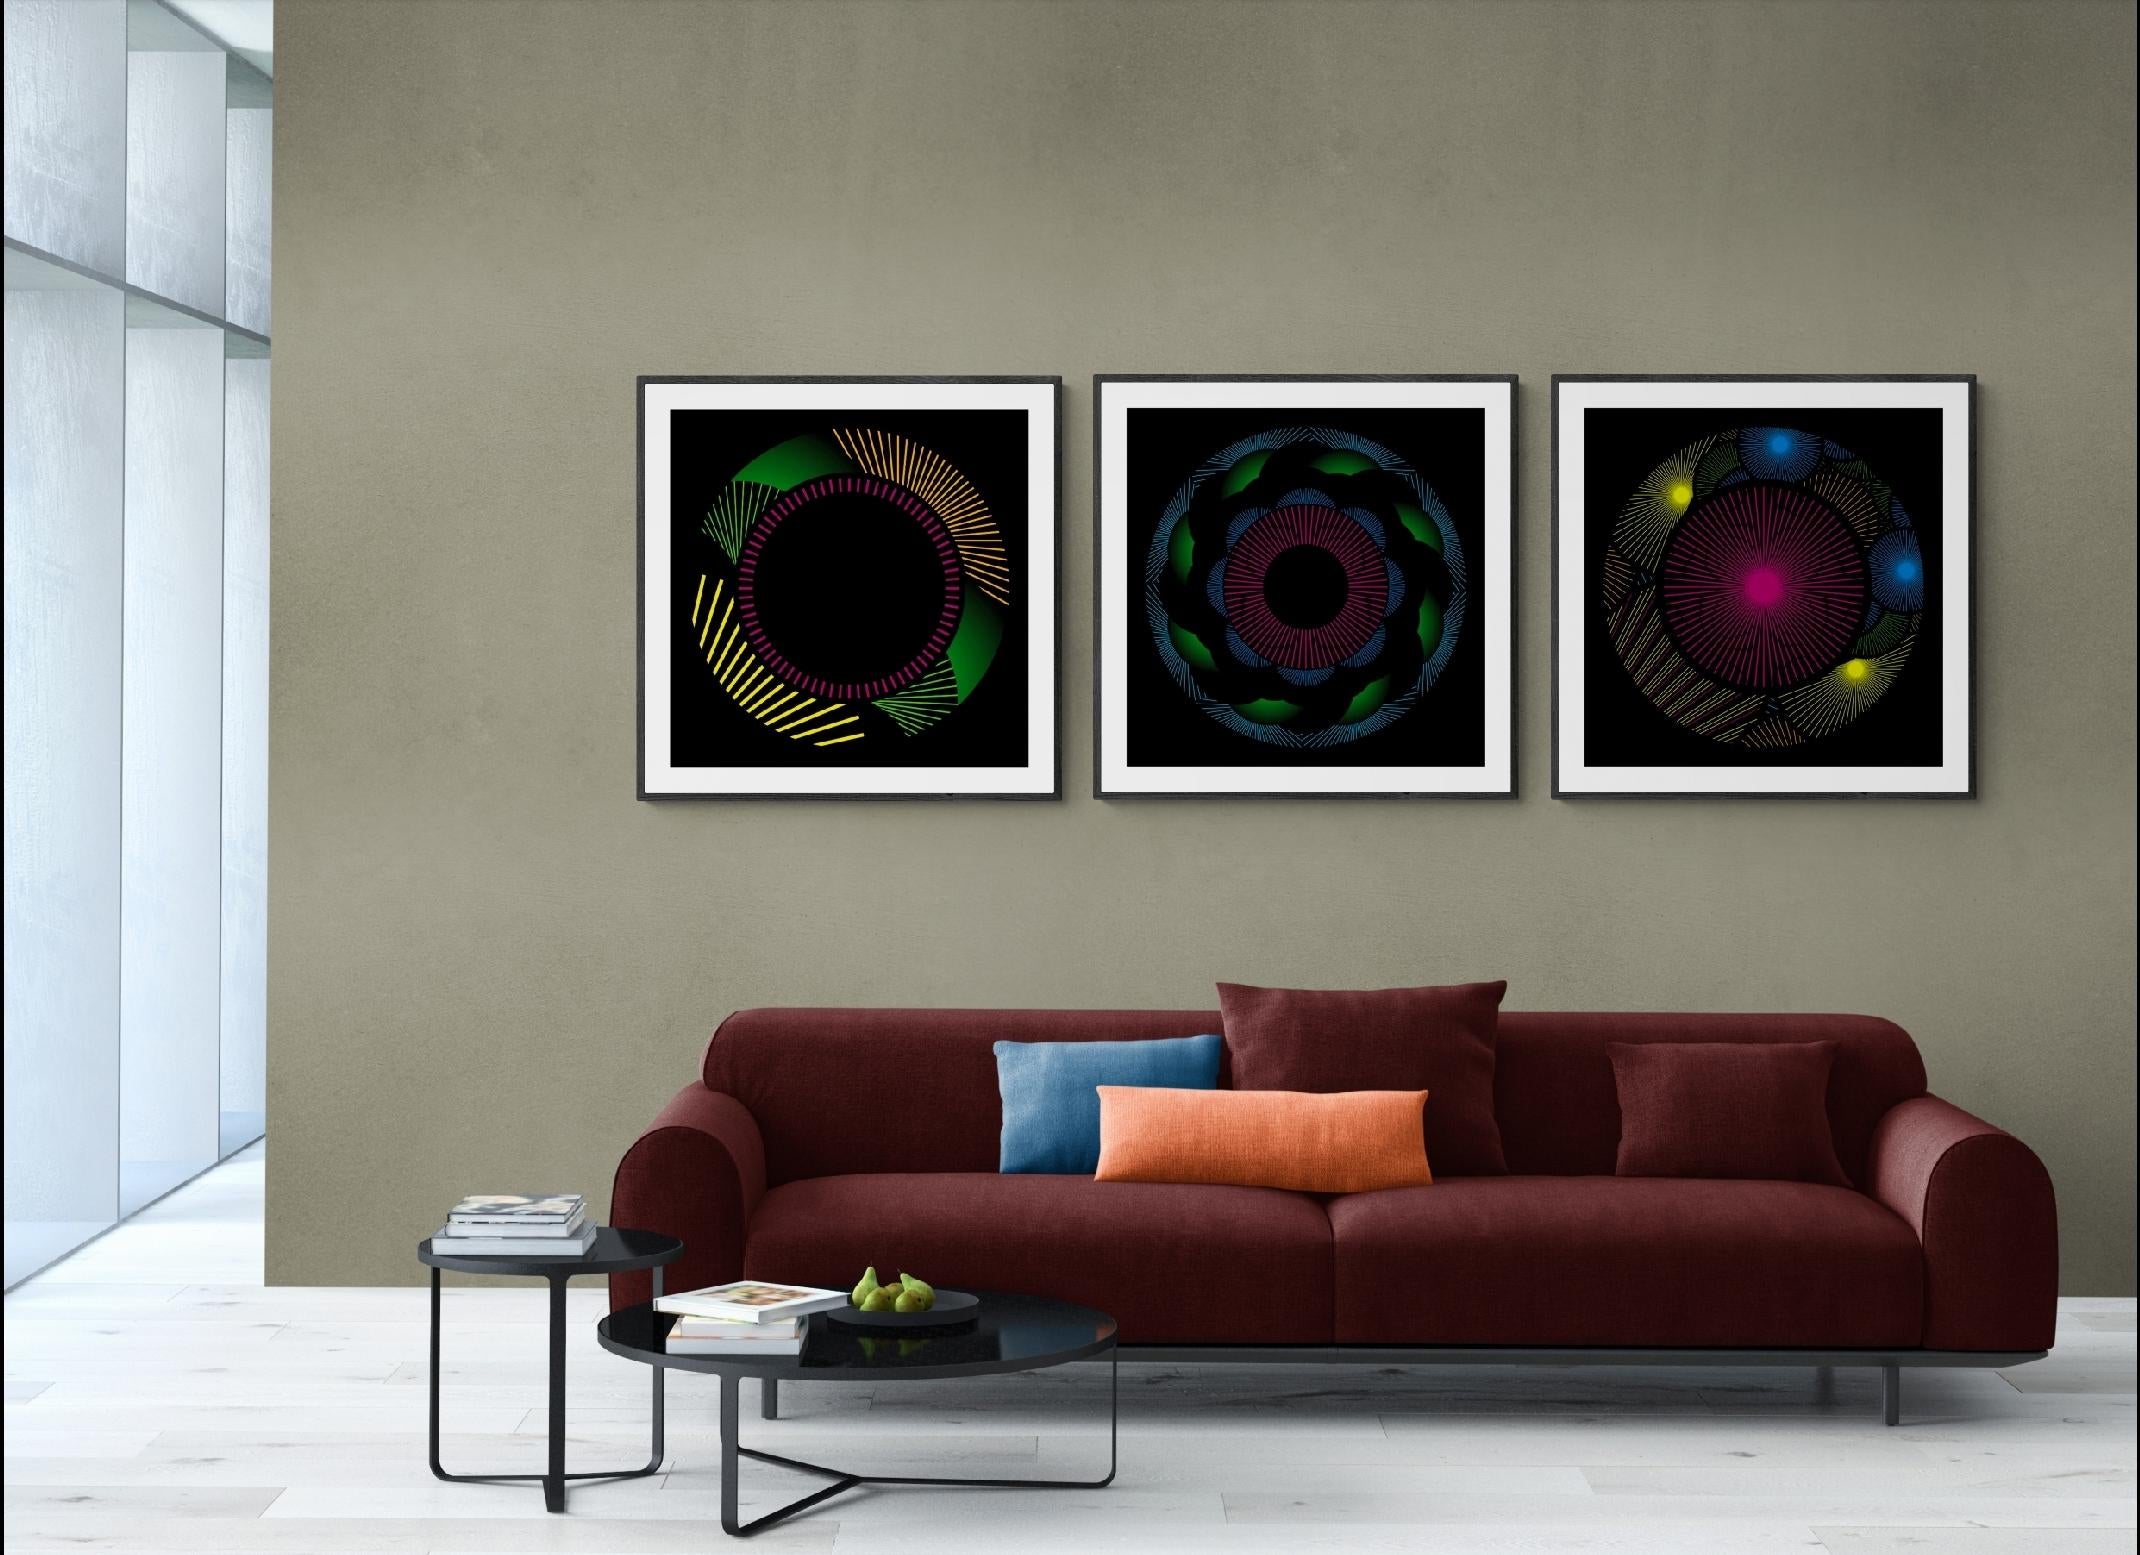 Die Nebulosa-Kollektion mit 35 farbenfrohen Kunstwerken ist eine limitierte Auflage von 50 hochwertigen Giclee-Drucken. Diese digitalen Illustrationen sind von Original-Fadenportalen inspiriert.
Jeder Druck wird mit einem signierten und nummerierten